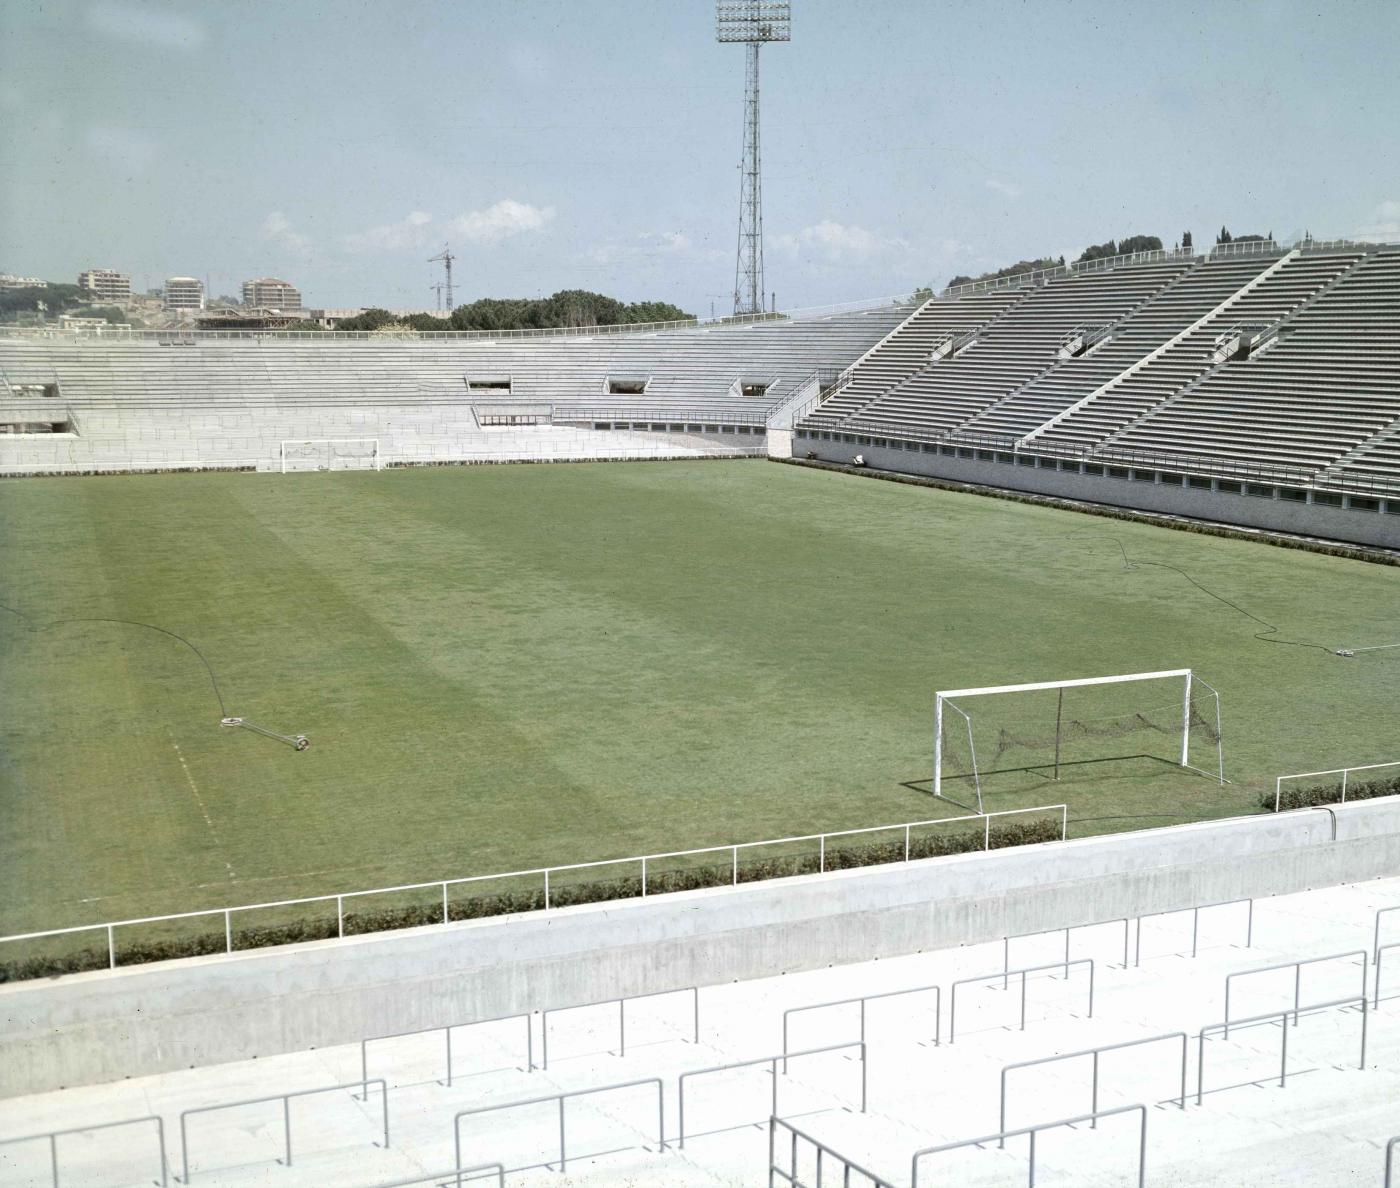 Stadio Flaminio tribuna e campo: le ultime news sul possibile stadio della Lazio